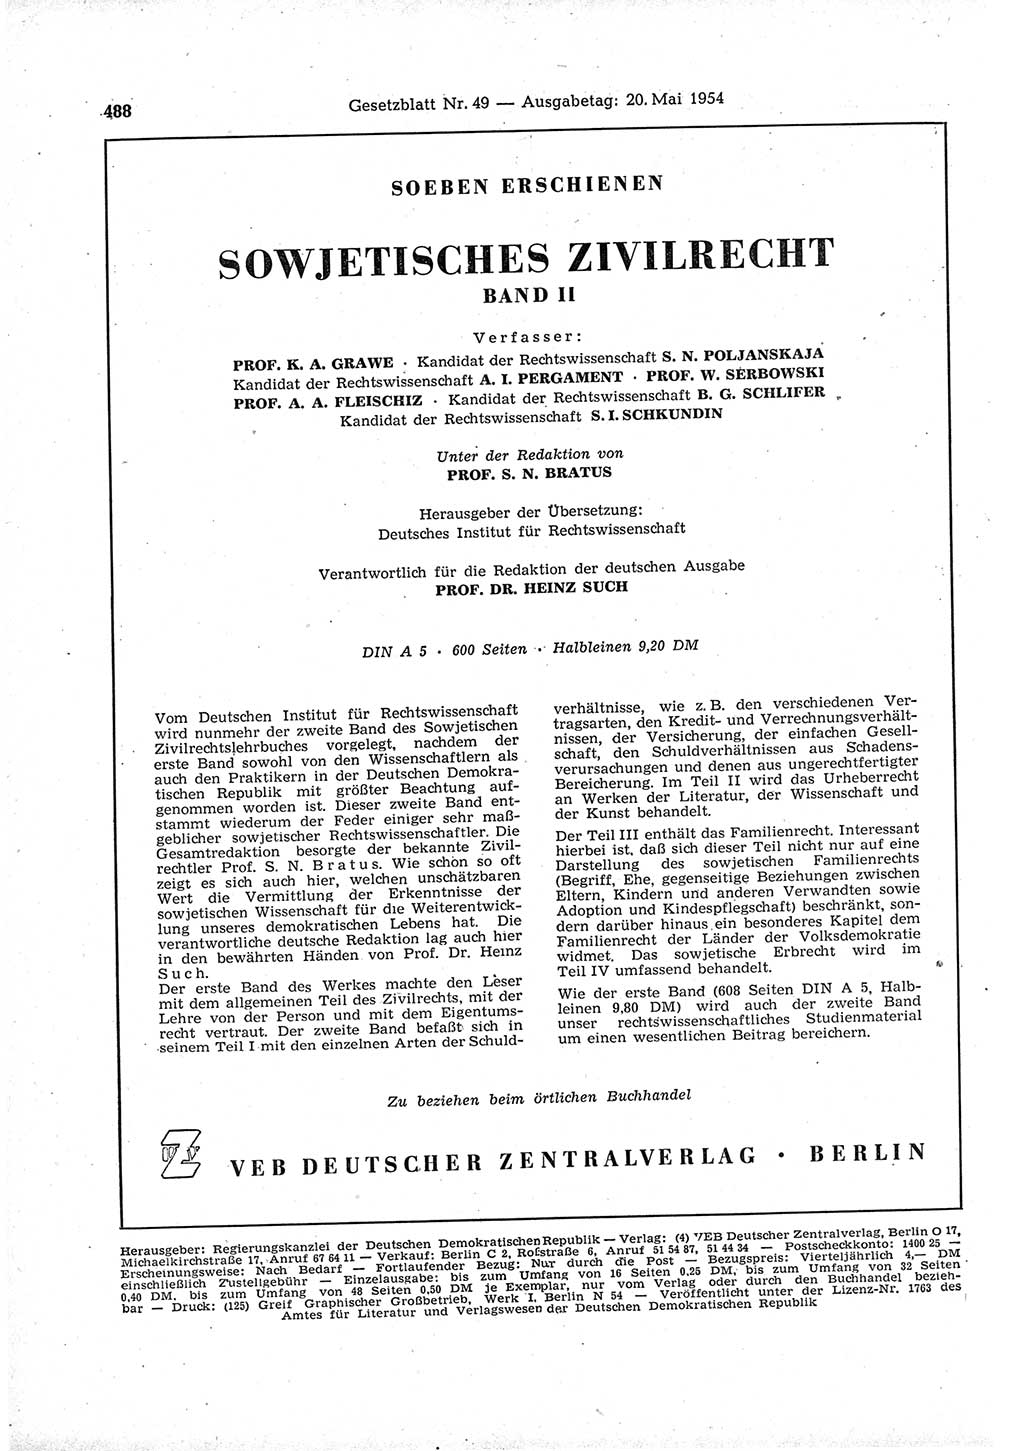 Gesetzblatt (GBl.) der Deutschen Demokratischen Republik (DDR) 1954, Seite 488 (GBl. DDR 1954, S. 488)